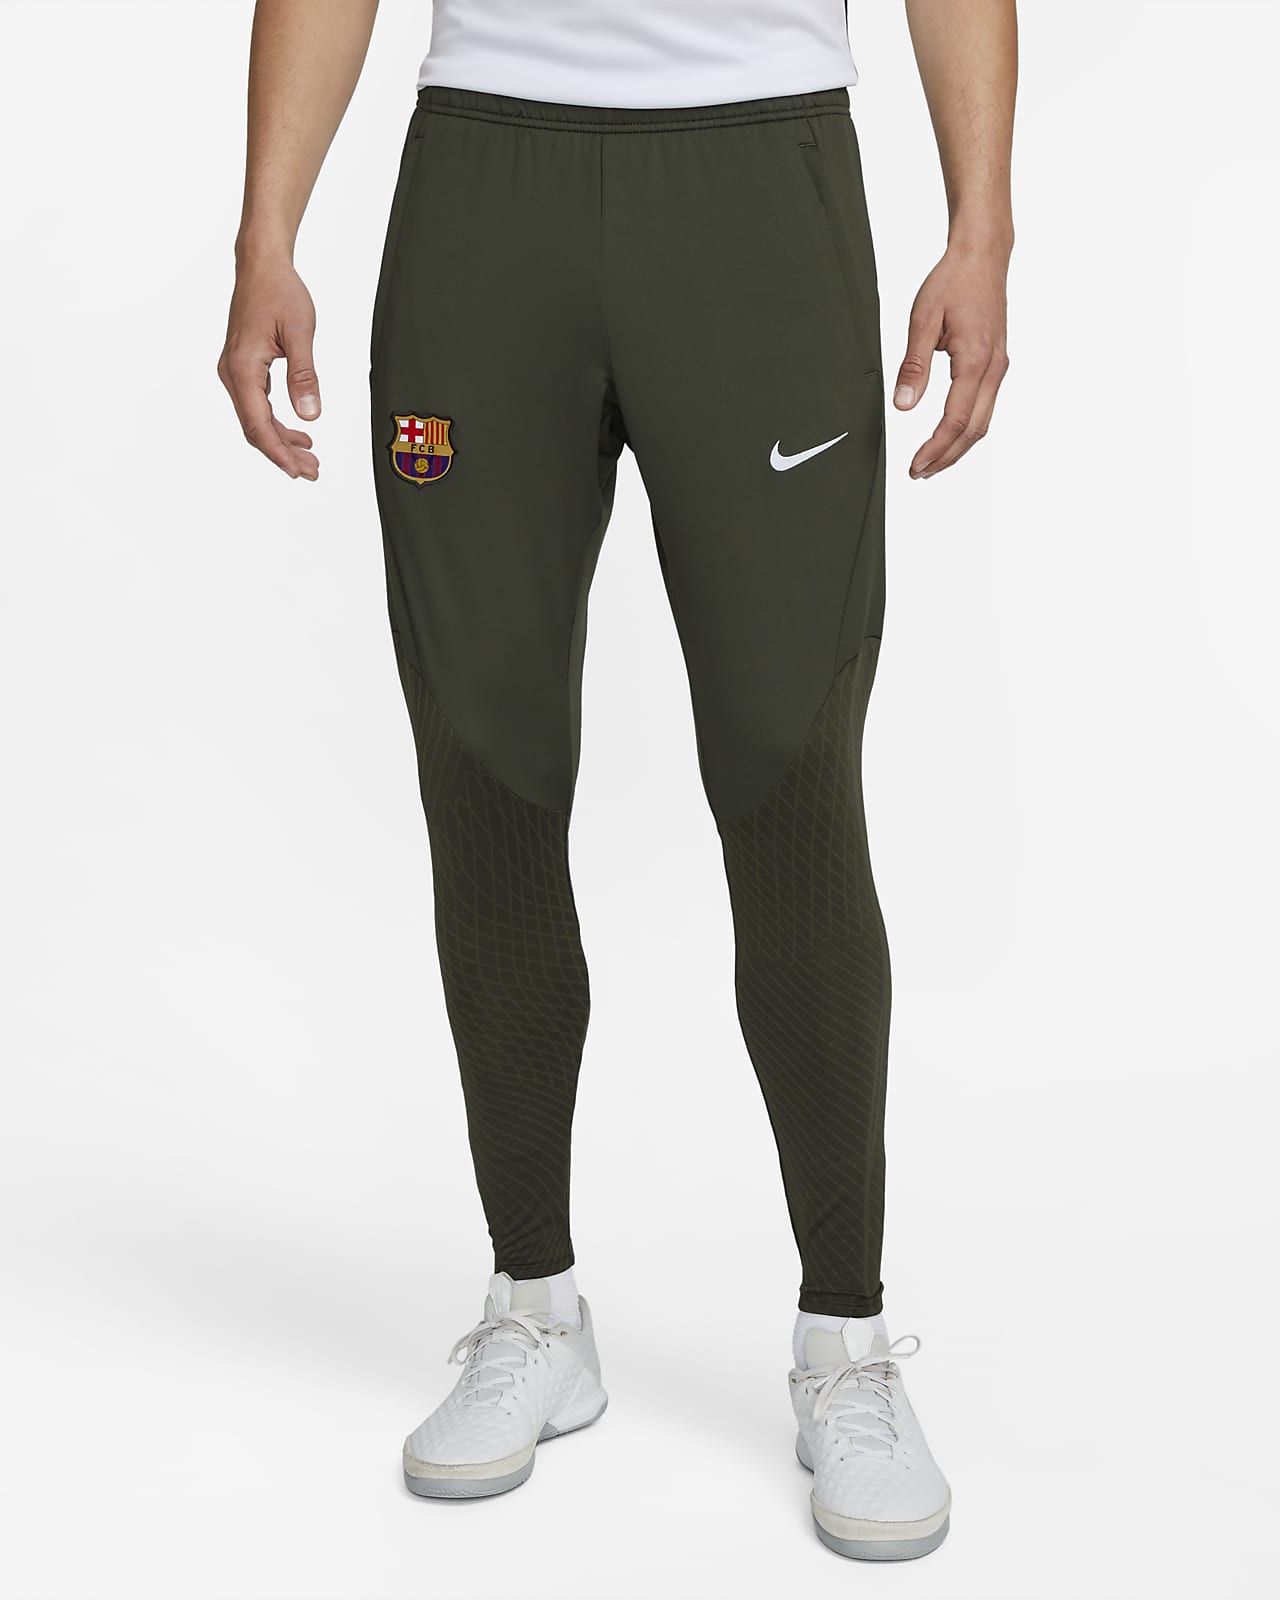 Ανδρικό πλεκτό ποδοσφαιρικό παντελόνι Nike Dri-FIT Μπαρτσελόνα Strike